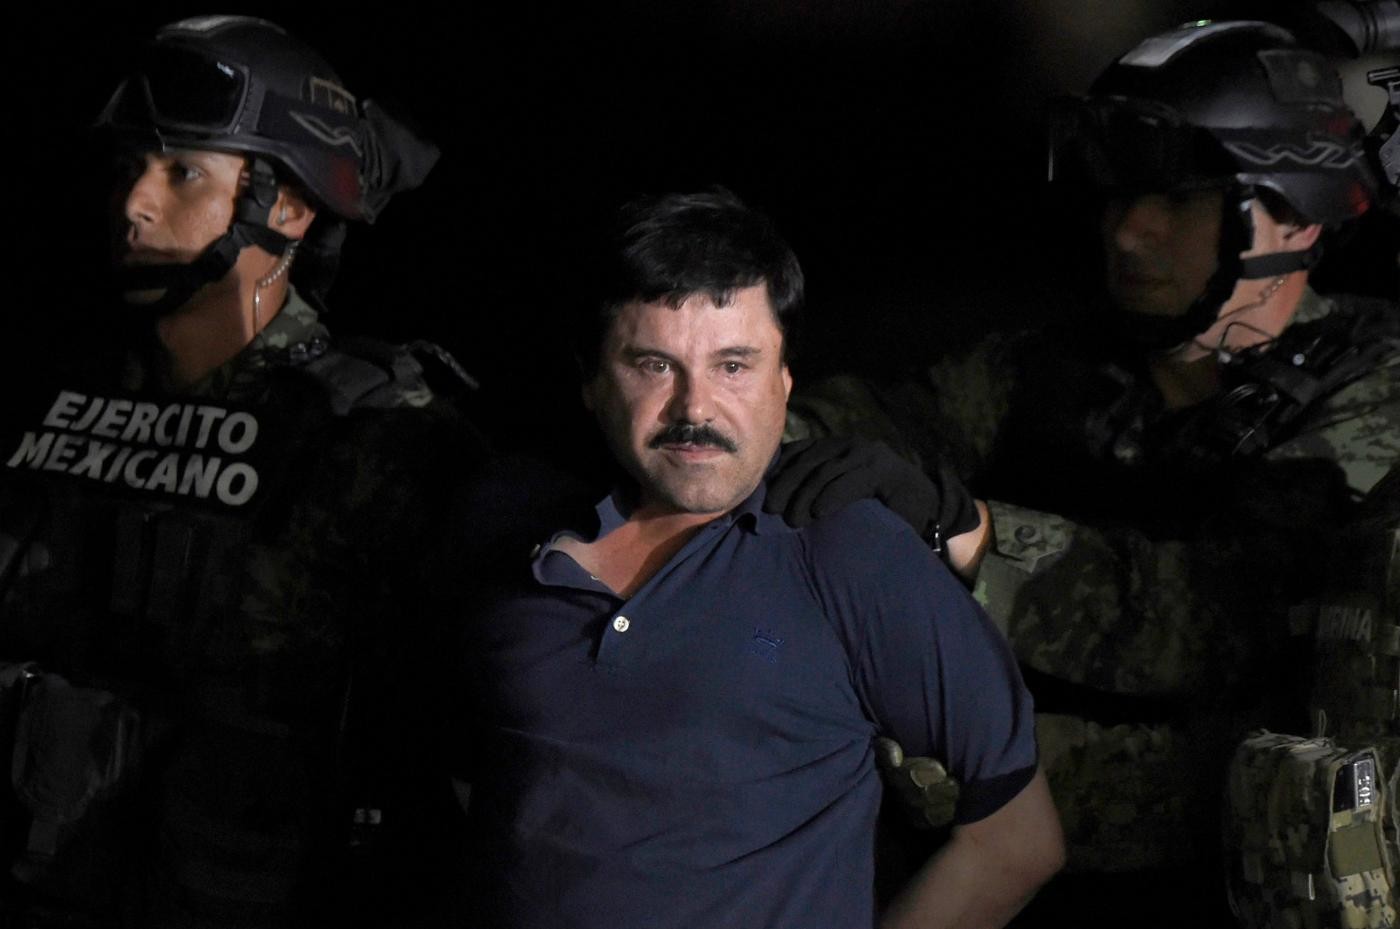 El Chapo condannato all’ergastolo a New York